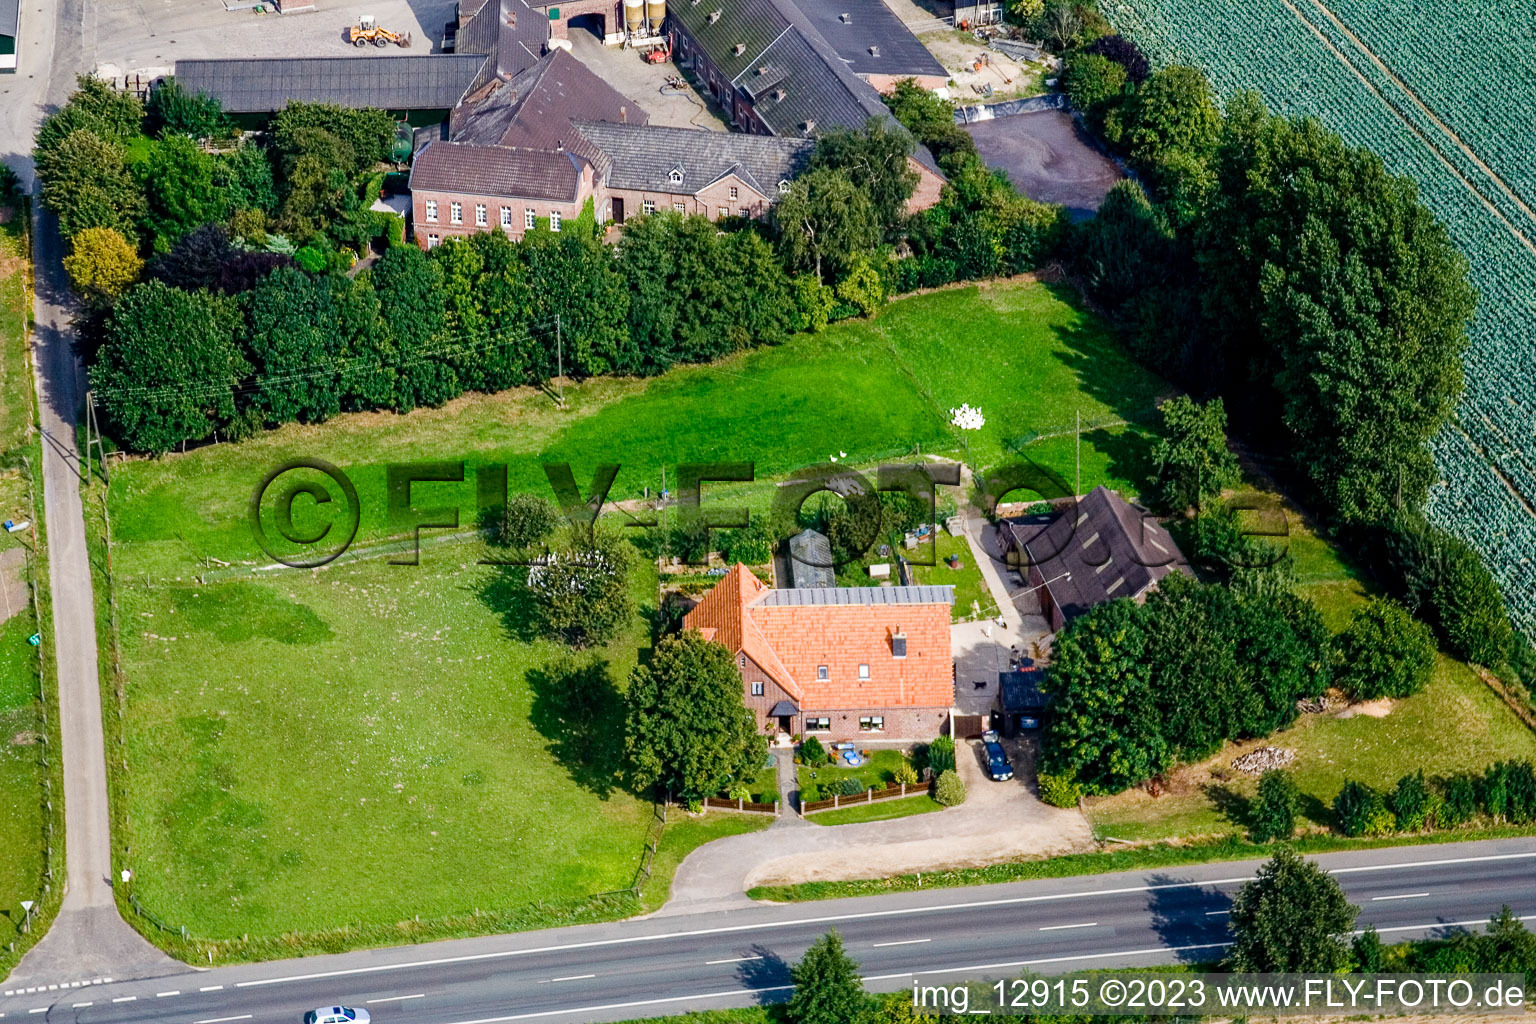 Drone image of Between Kerken and Limburg in Kerken in the state North Rhine-Westphalia, Germany